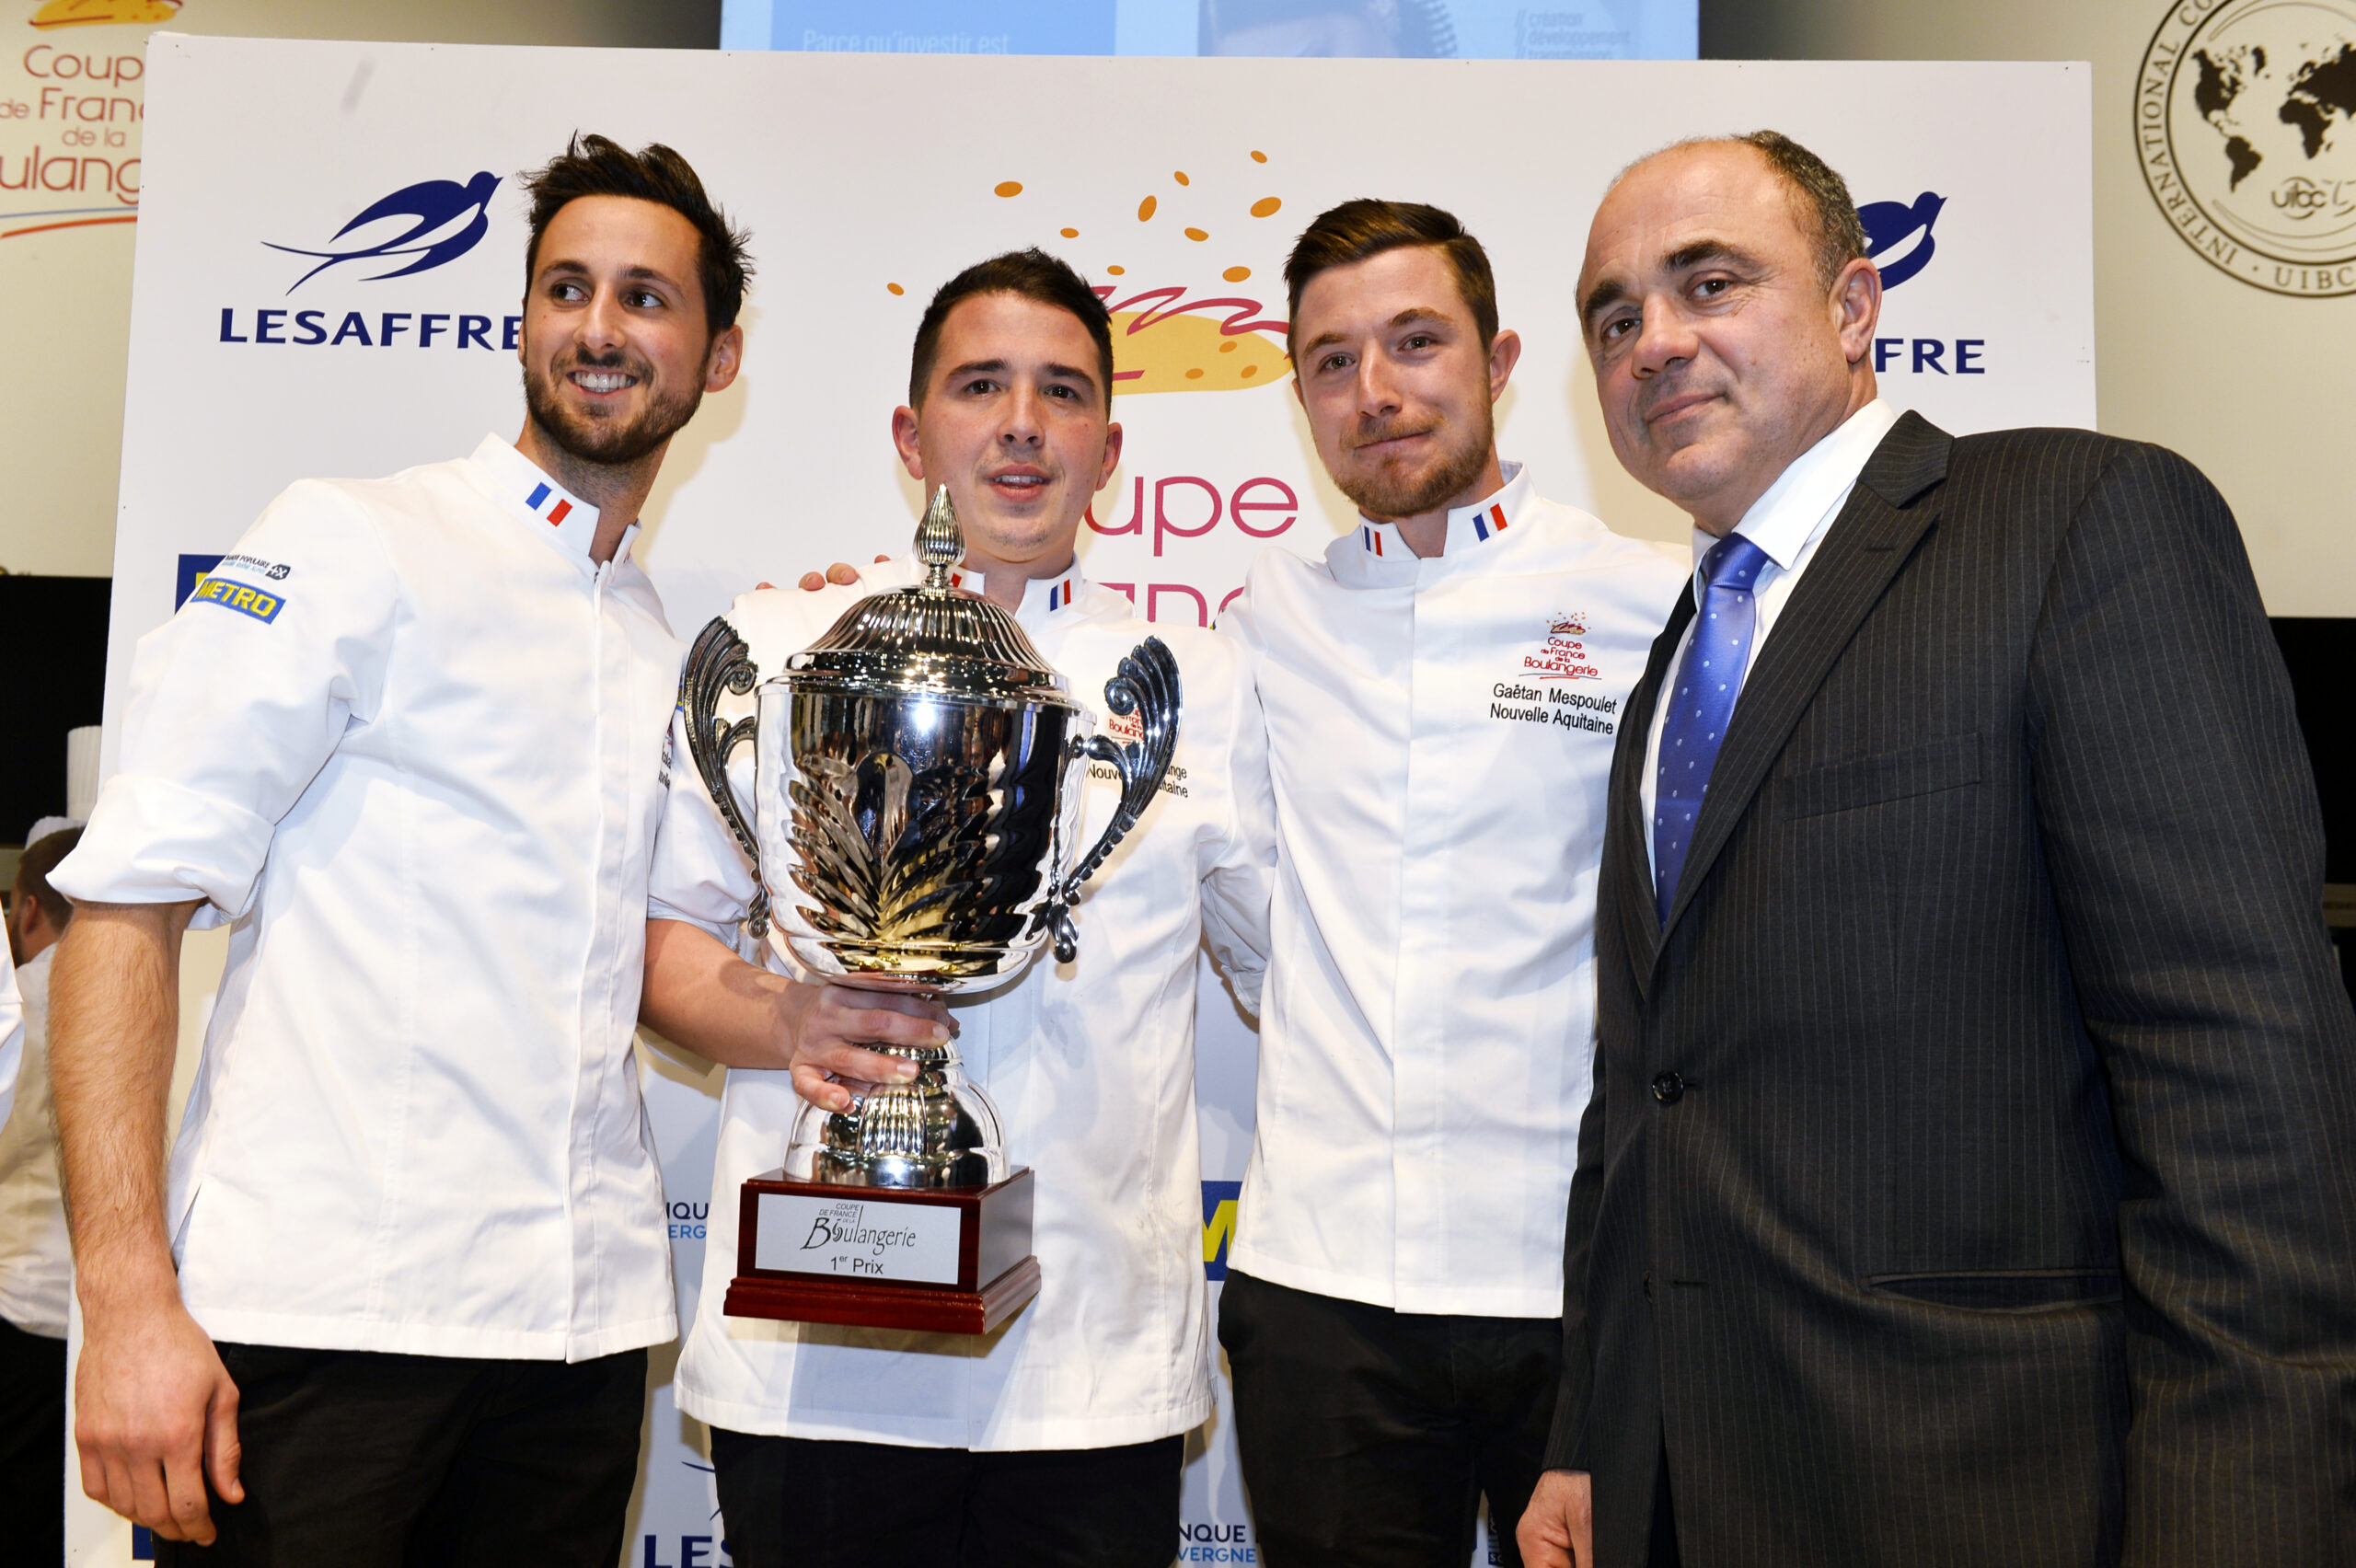 La Coupe de France de la Boulangerie remportée par l’équipe de la Nouvelle Aquitaine